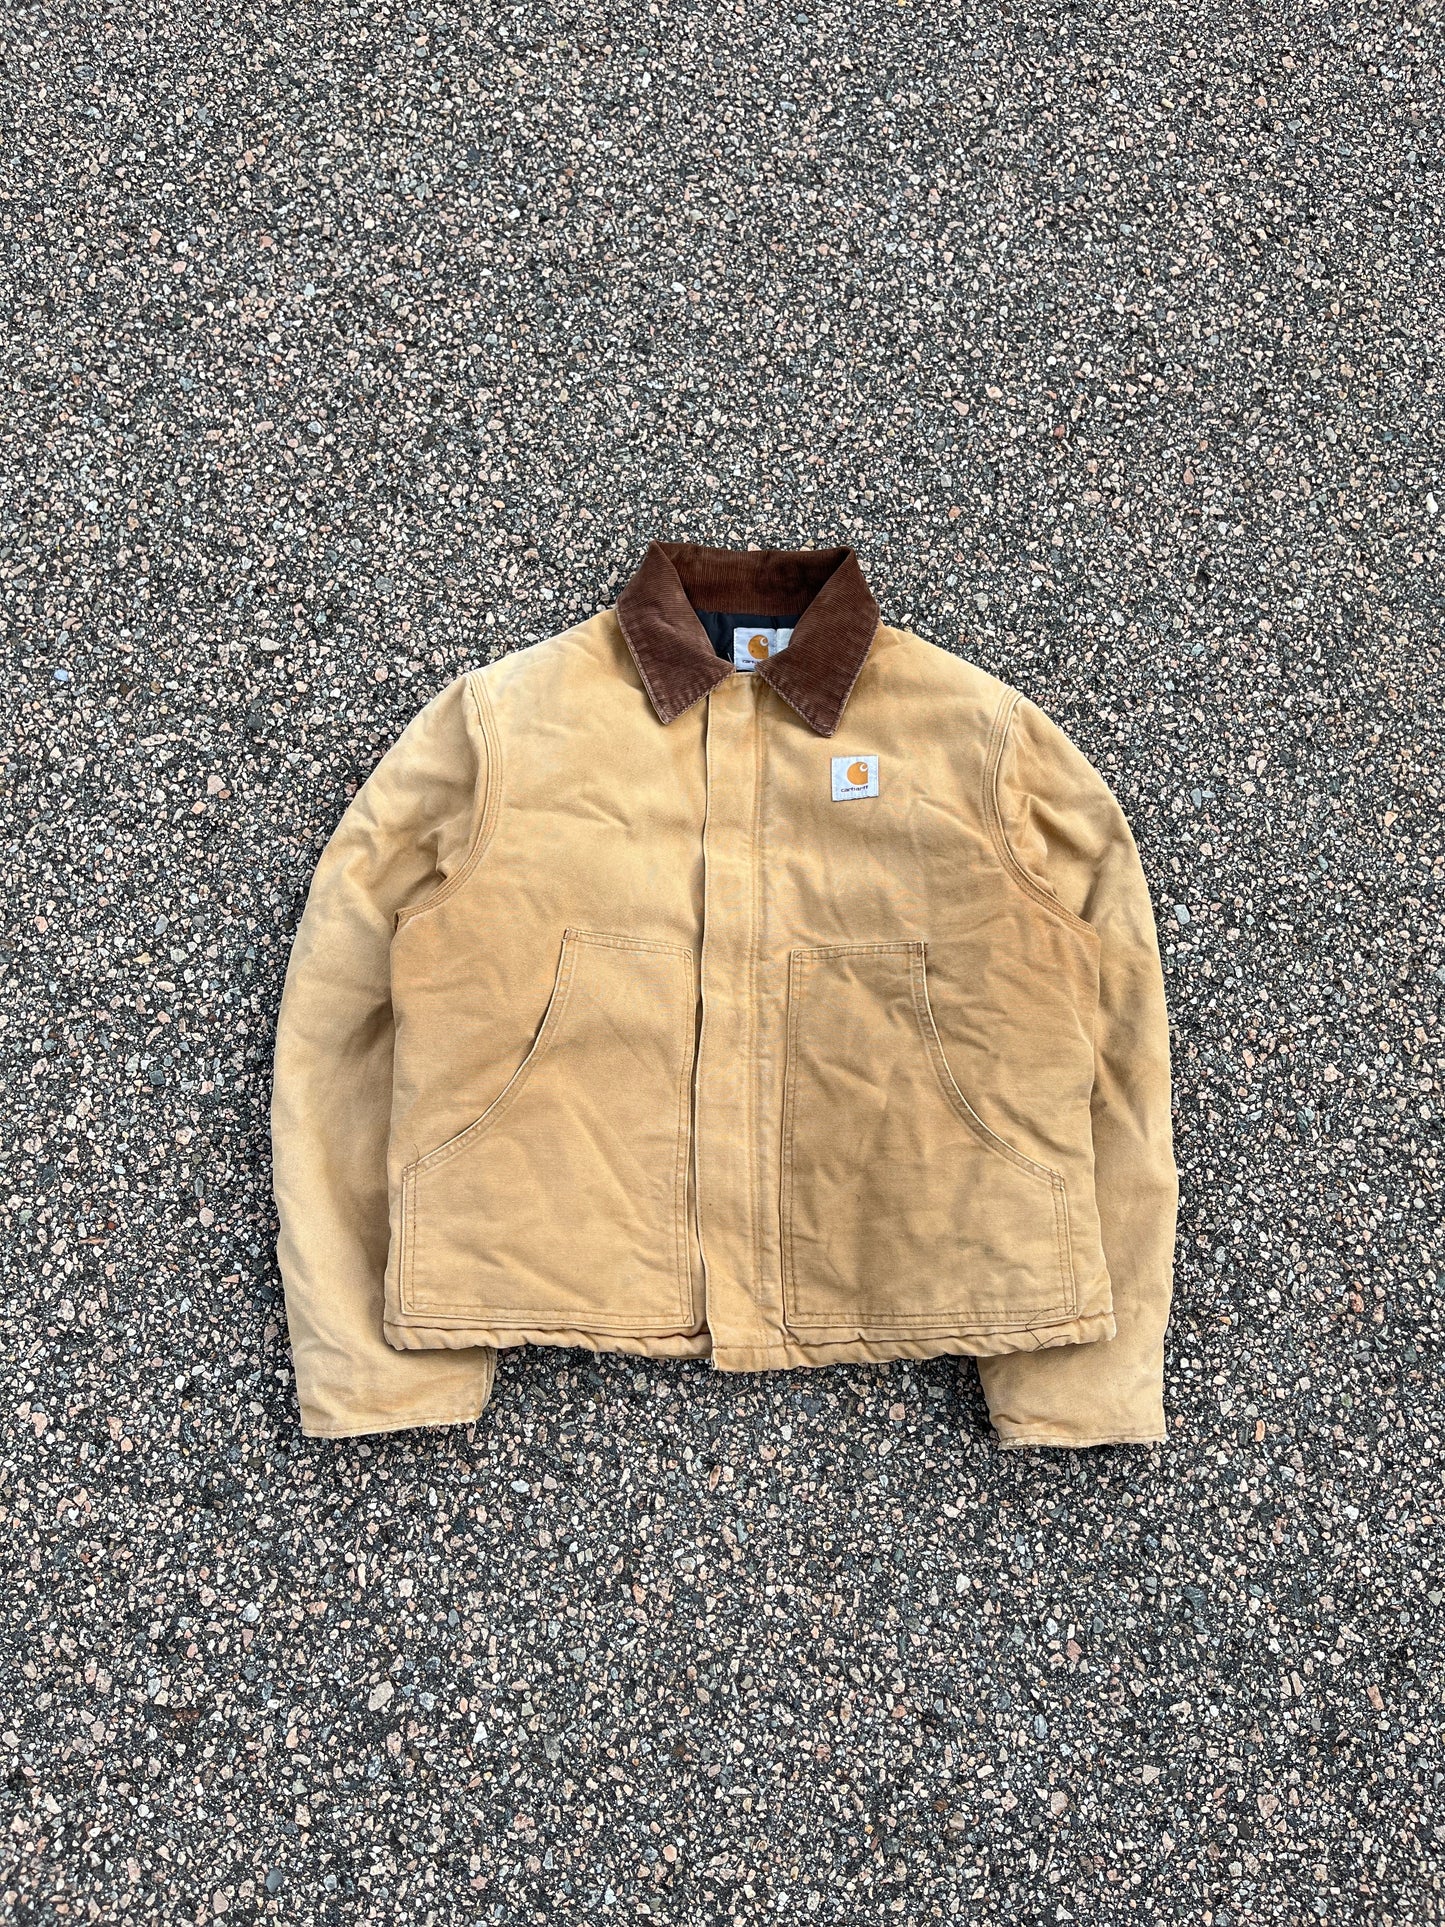 Faded Tan Carhartt Arctic Jacket - Medium